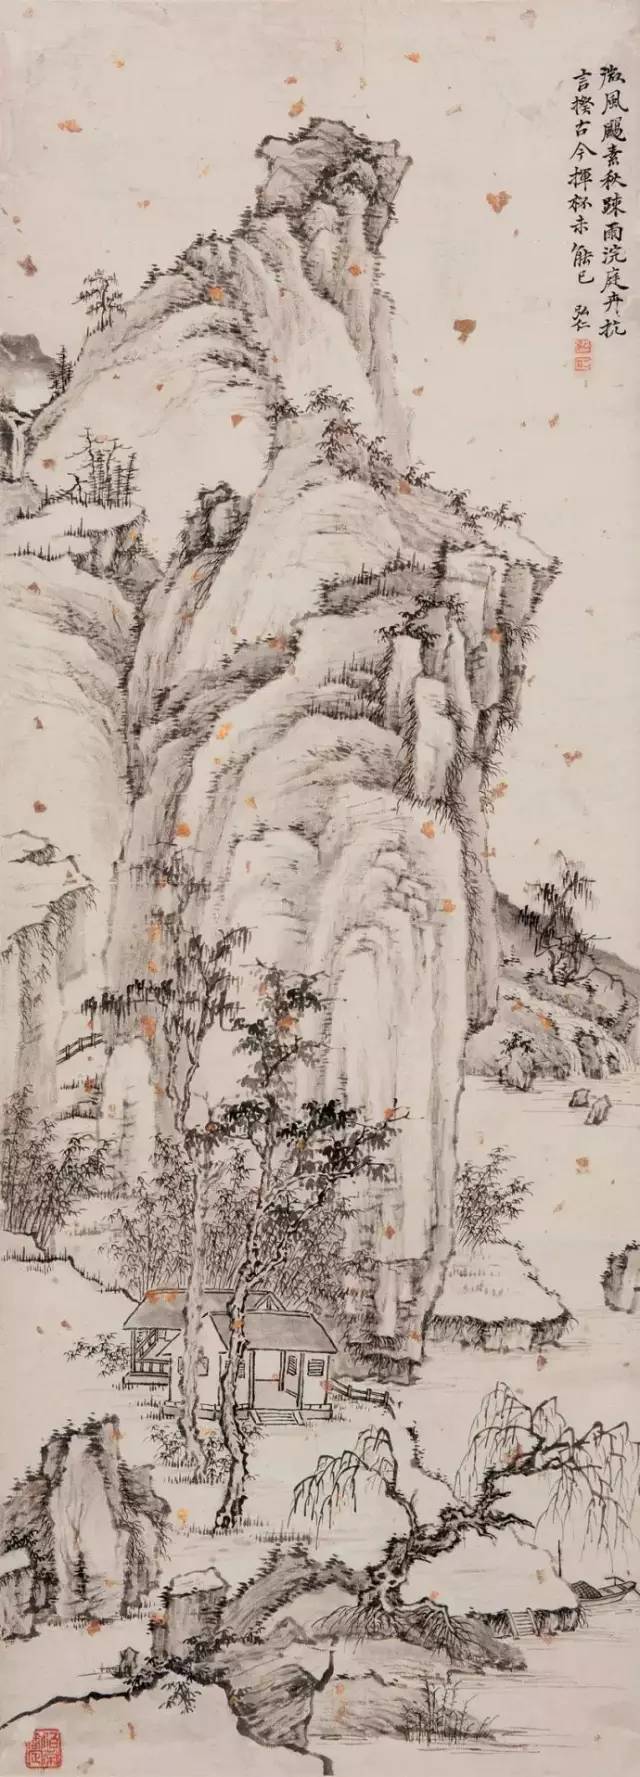 石涛,台北故宫博物院,朱耷,水墨,山水画